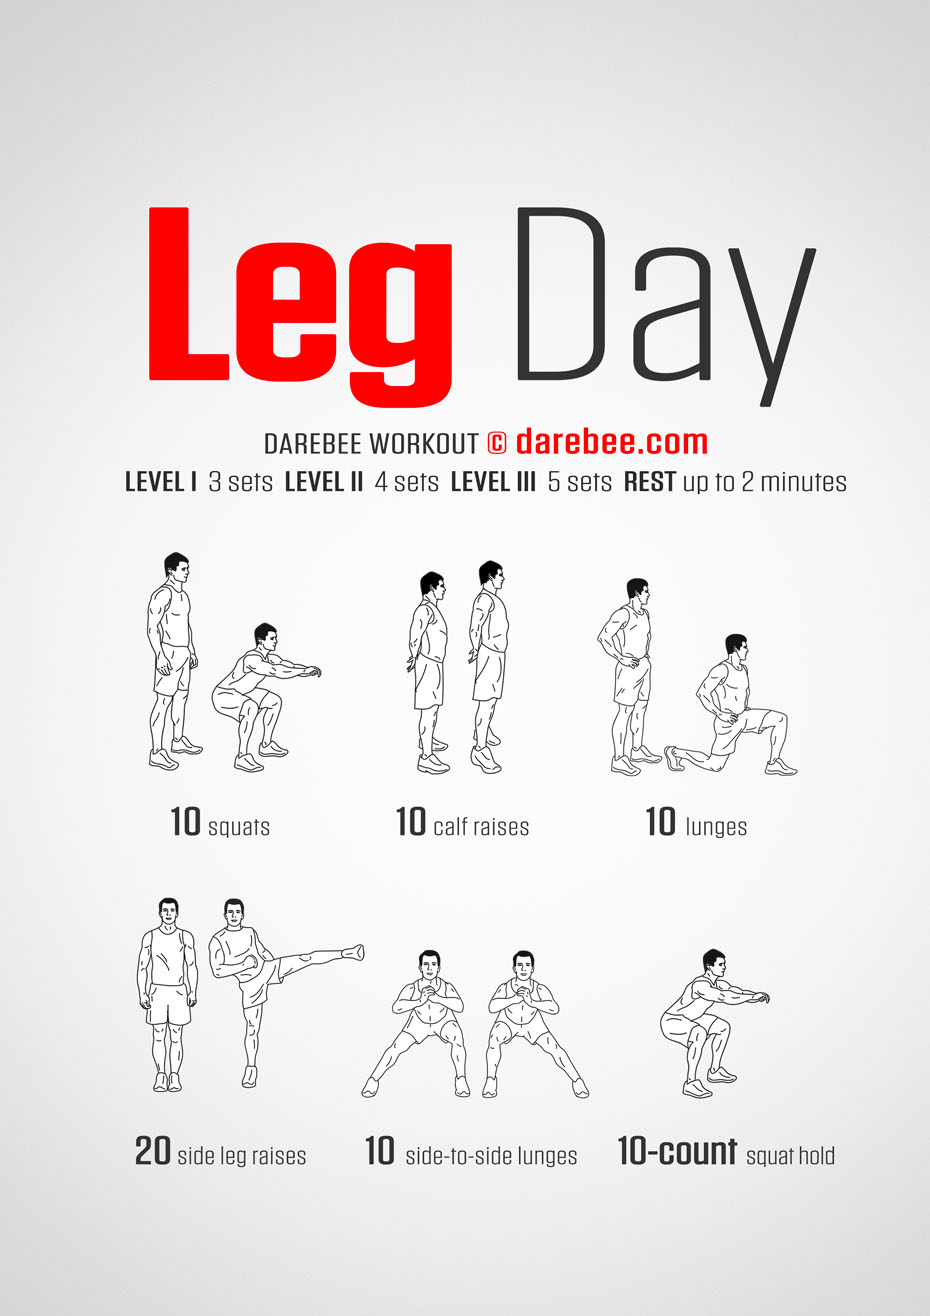 legday-workout